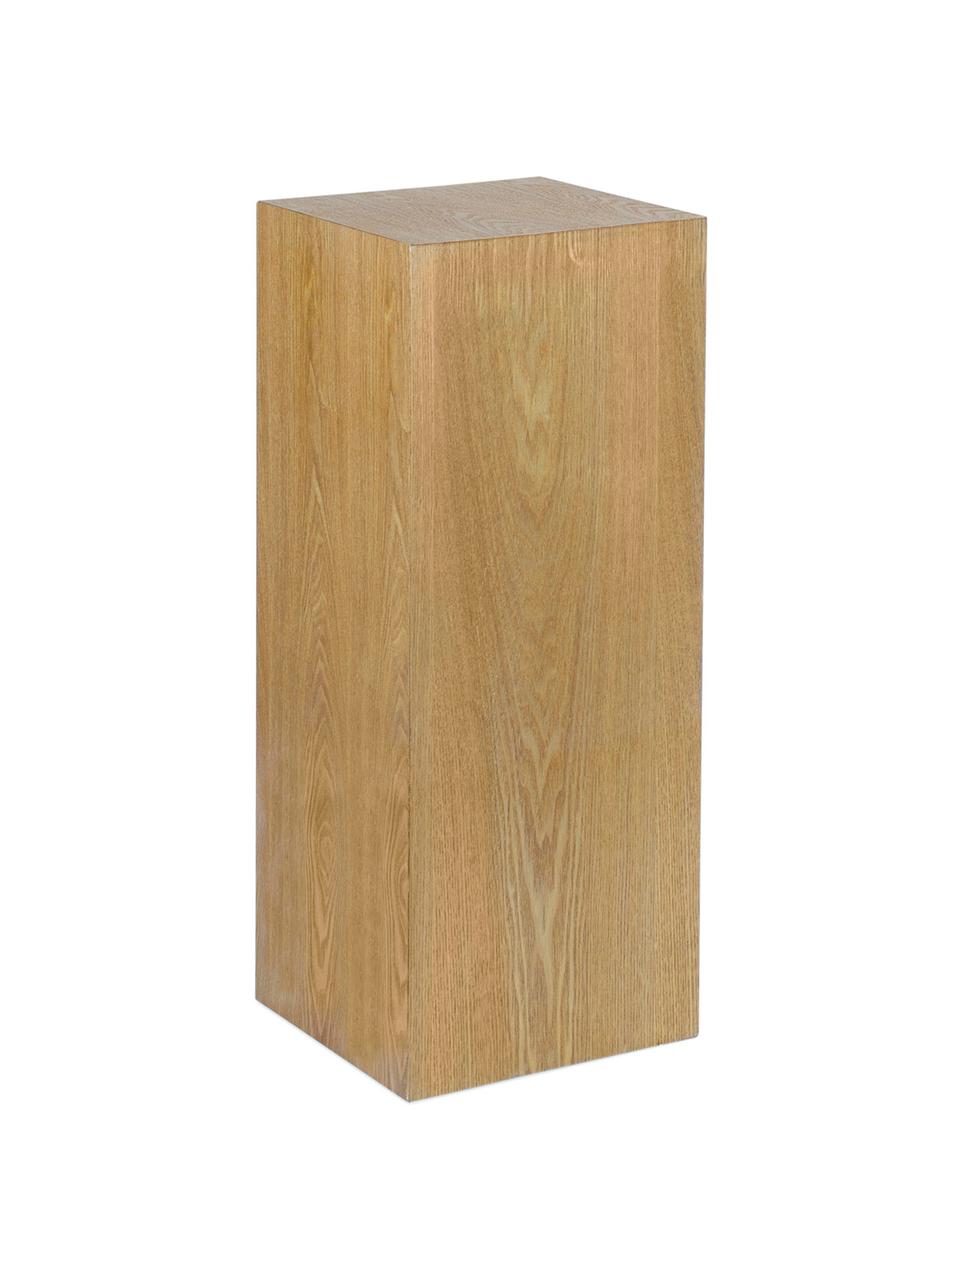 Holz-Dekosäule Pedestal in verschiedenen Grössen, Mitteldichte Holzfaserplatte (MDF), Eschenholzfurnier, Holz, B 28 x H 70 cm